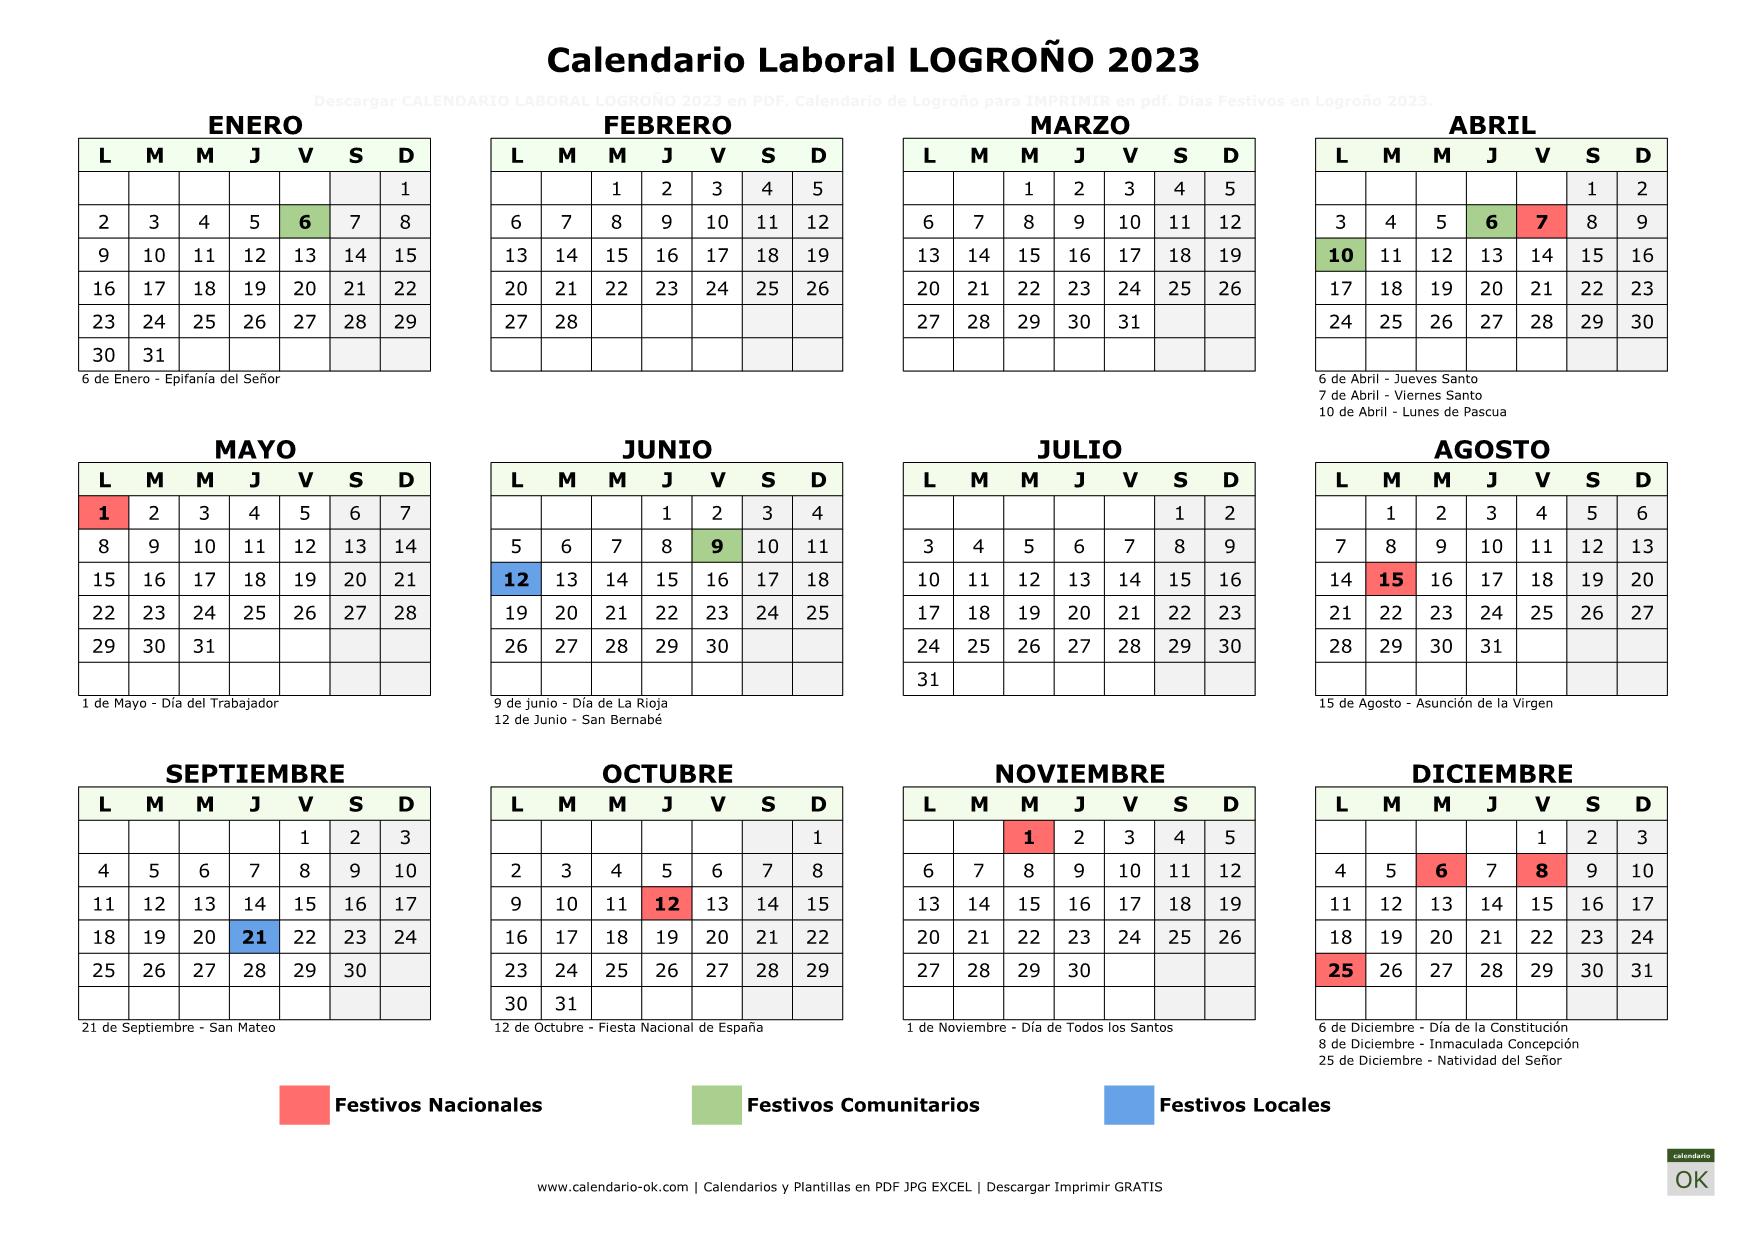 Calendario La Rioja 2023 ▷ Calendario Laboral LOGROÑO 2023 | PDF | JPG